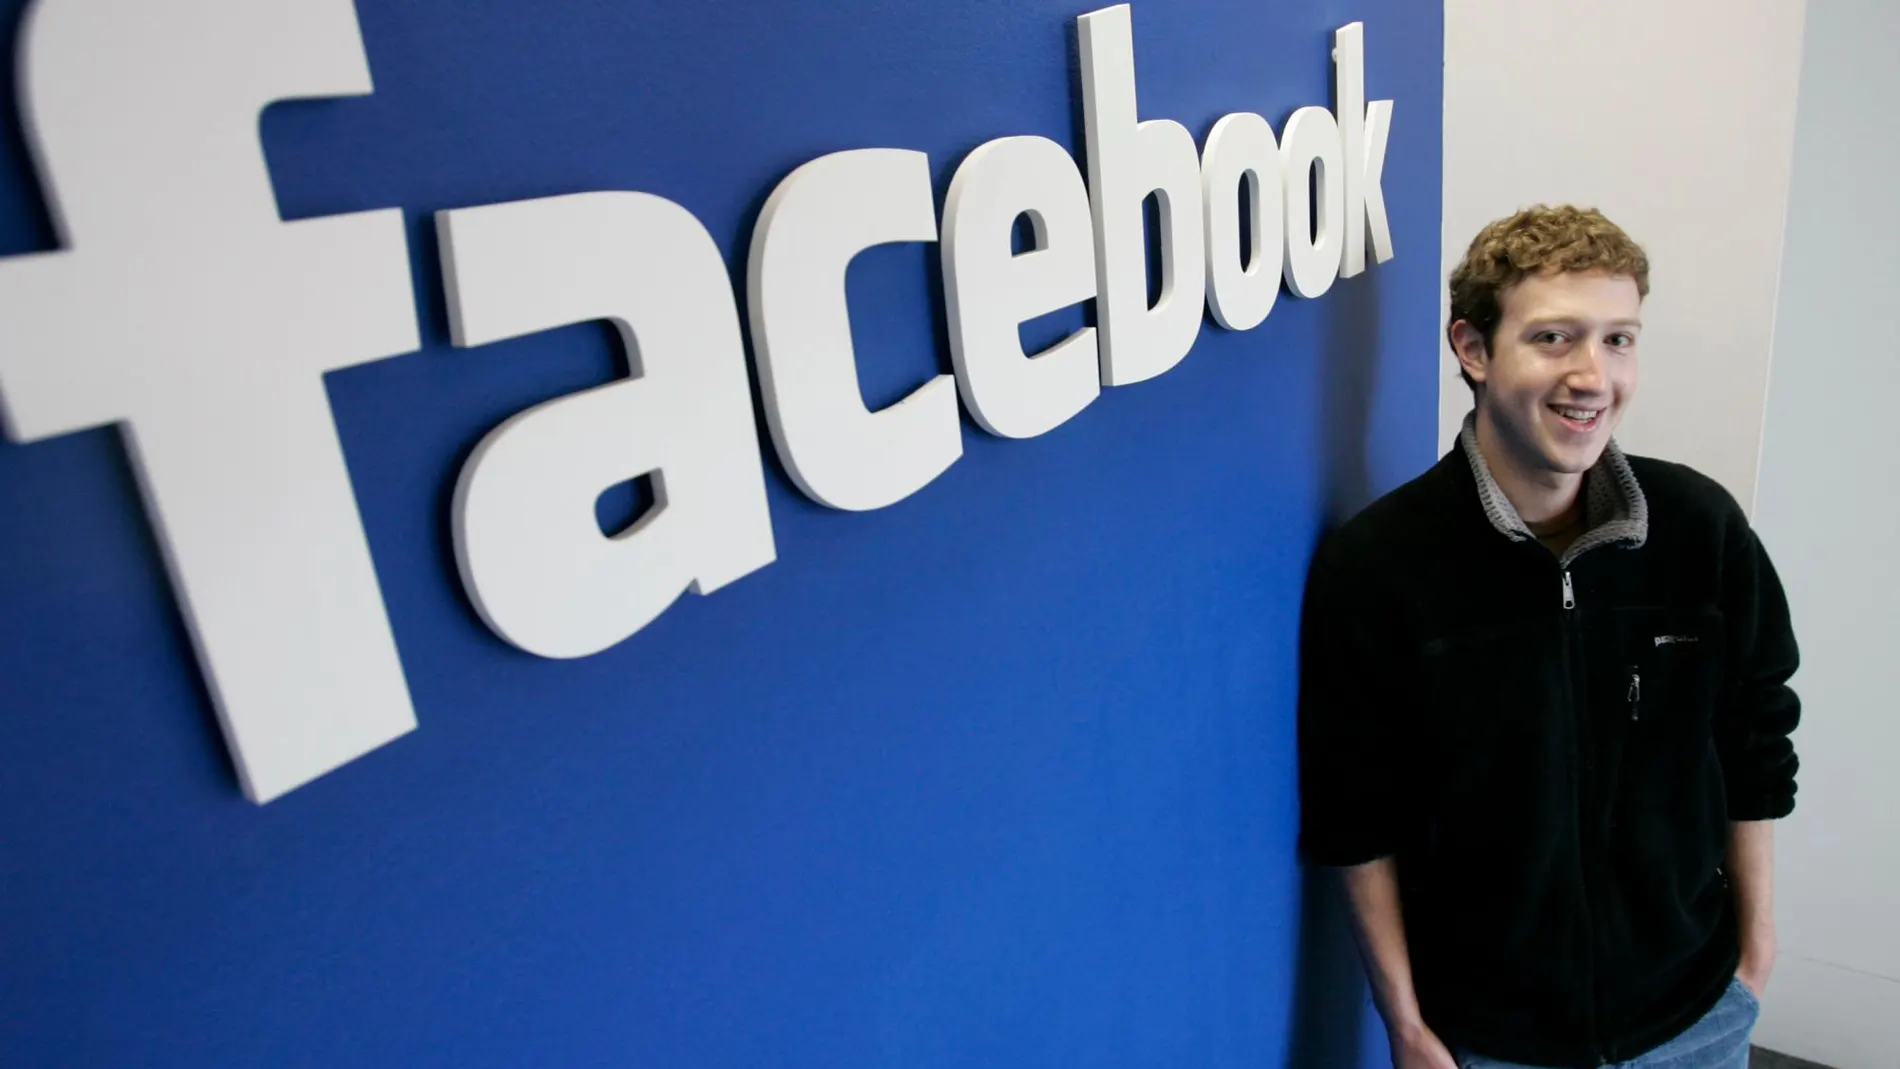 Mark Zuckerberg, CEO de Facebook, en una imagen tomada en 2007 / AP